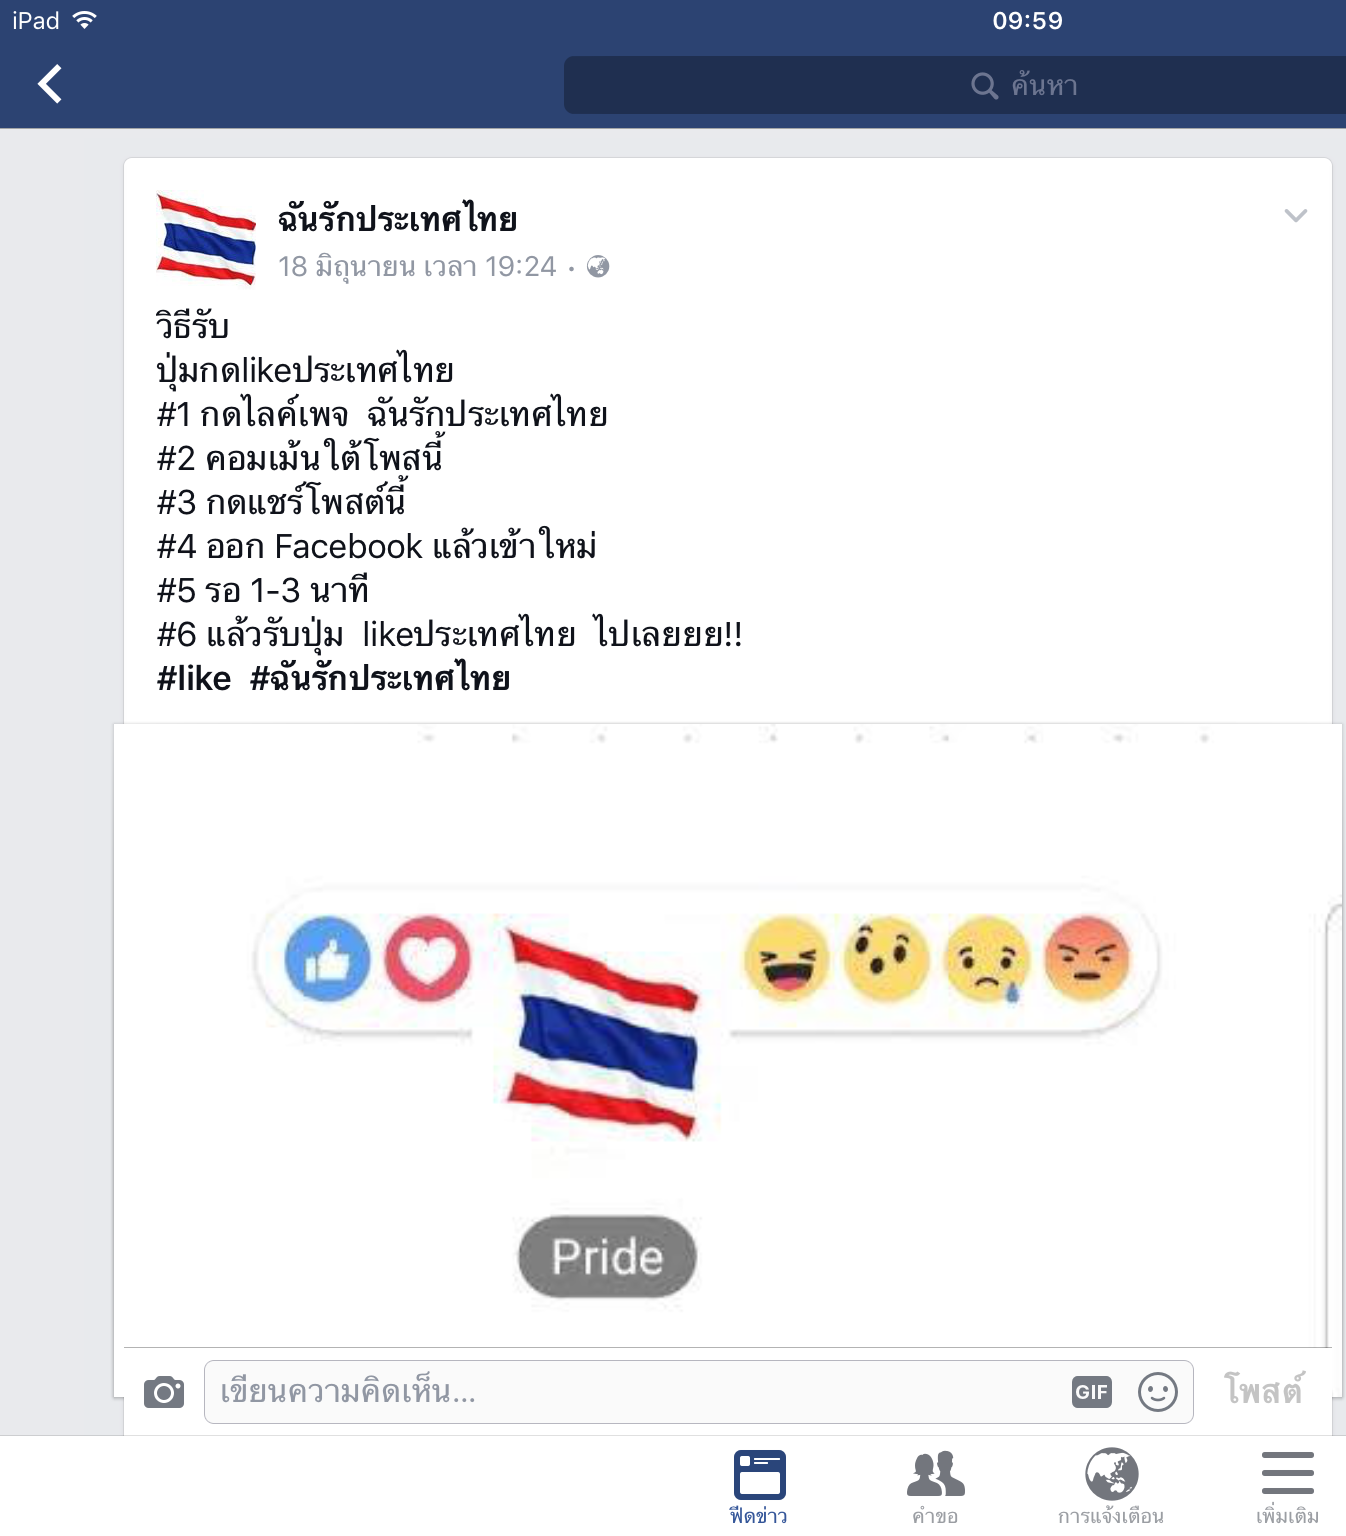 เพจ “ฉันรักประเทศไทย” กด Like กด Share ได้ Emoticon ธงชาติไทย ไม่เป็นความจริง!